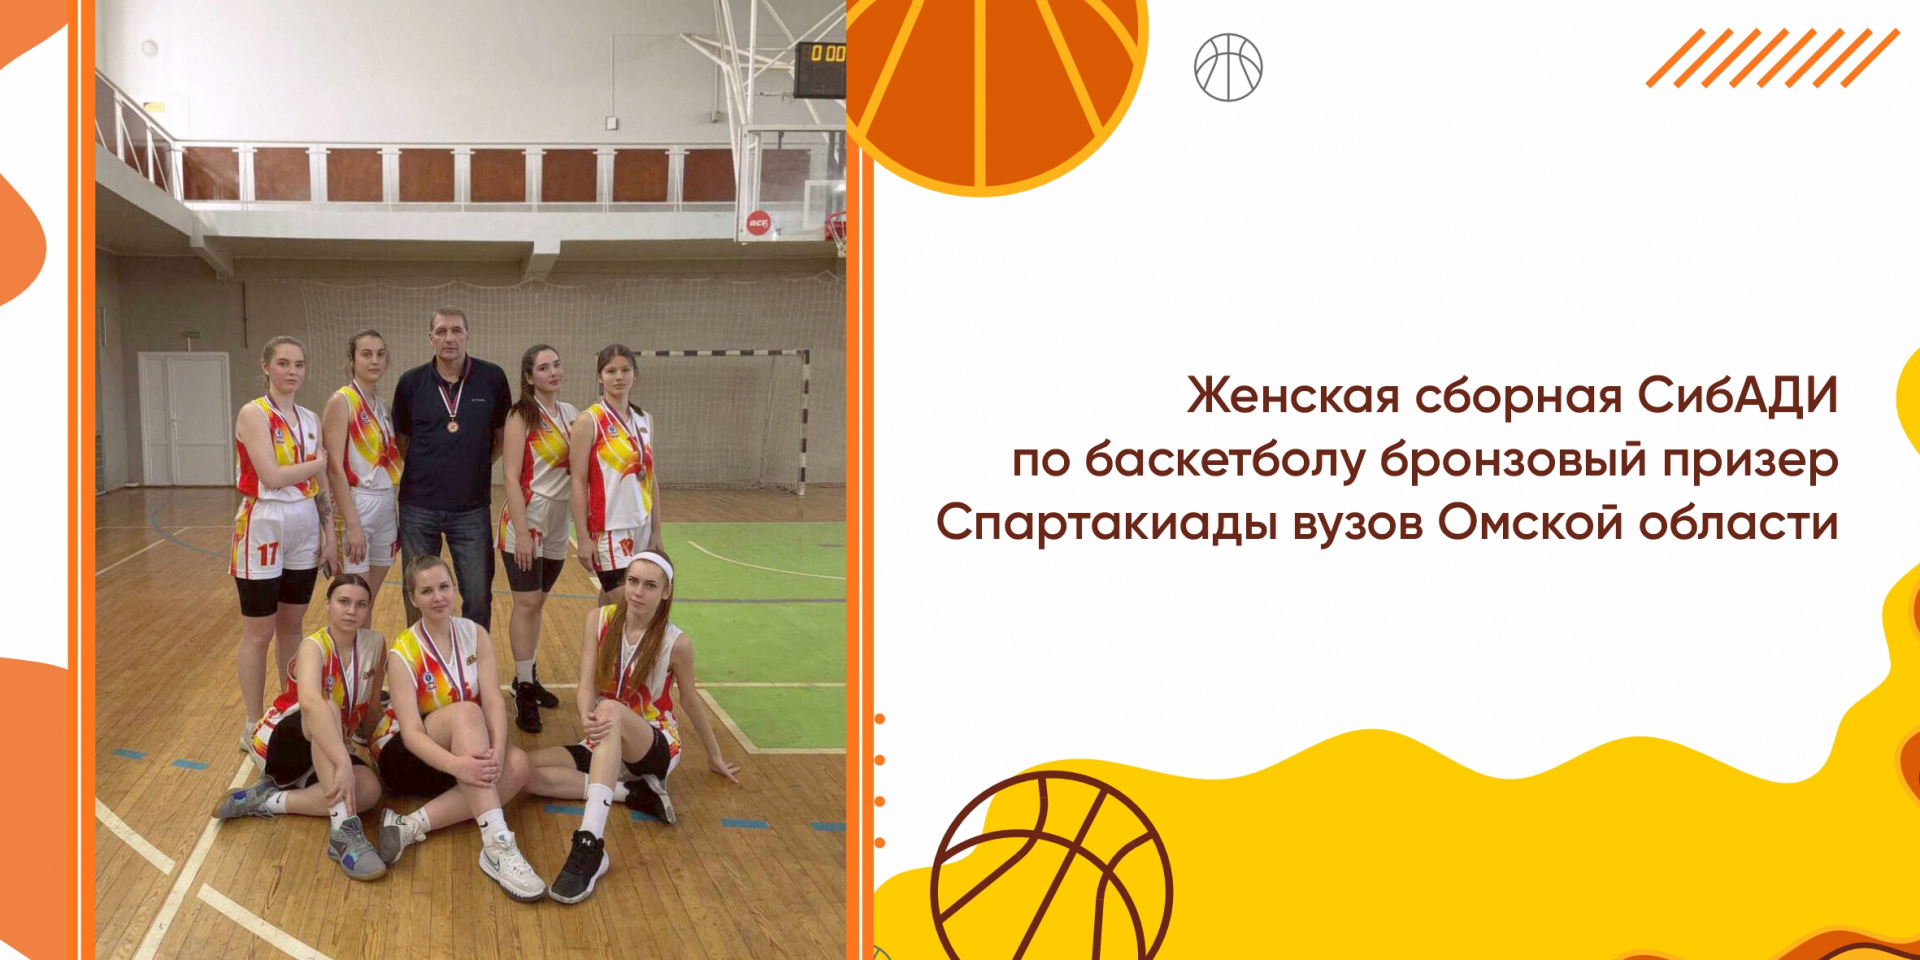 Женская сборная СибАДИ по баскетболу бронзовый призер Спартакиады вузов Омской области